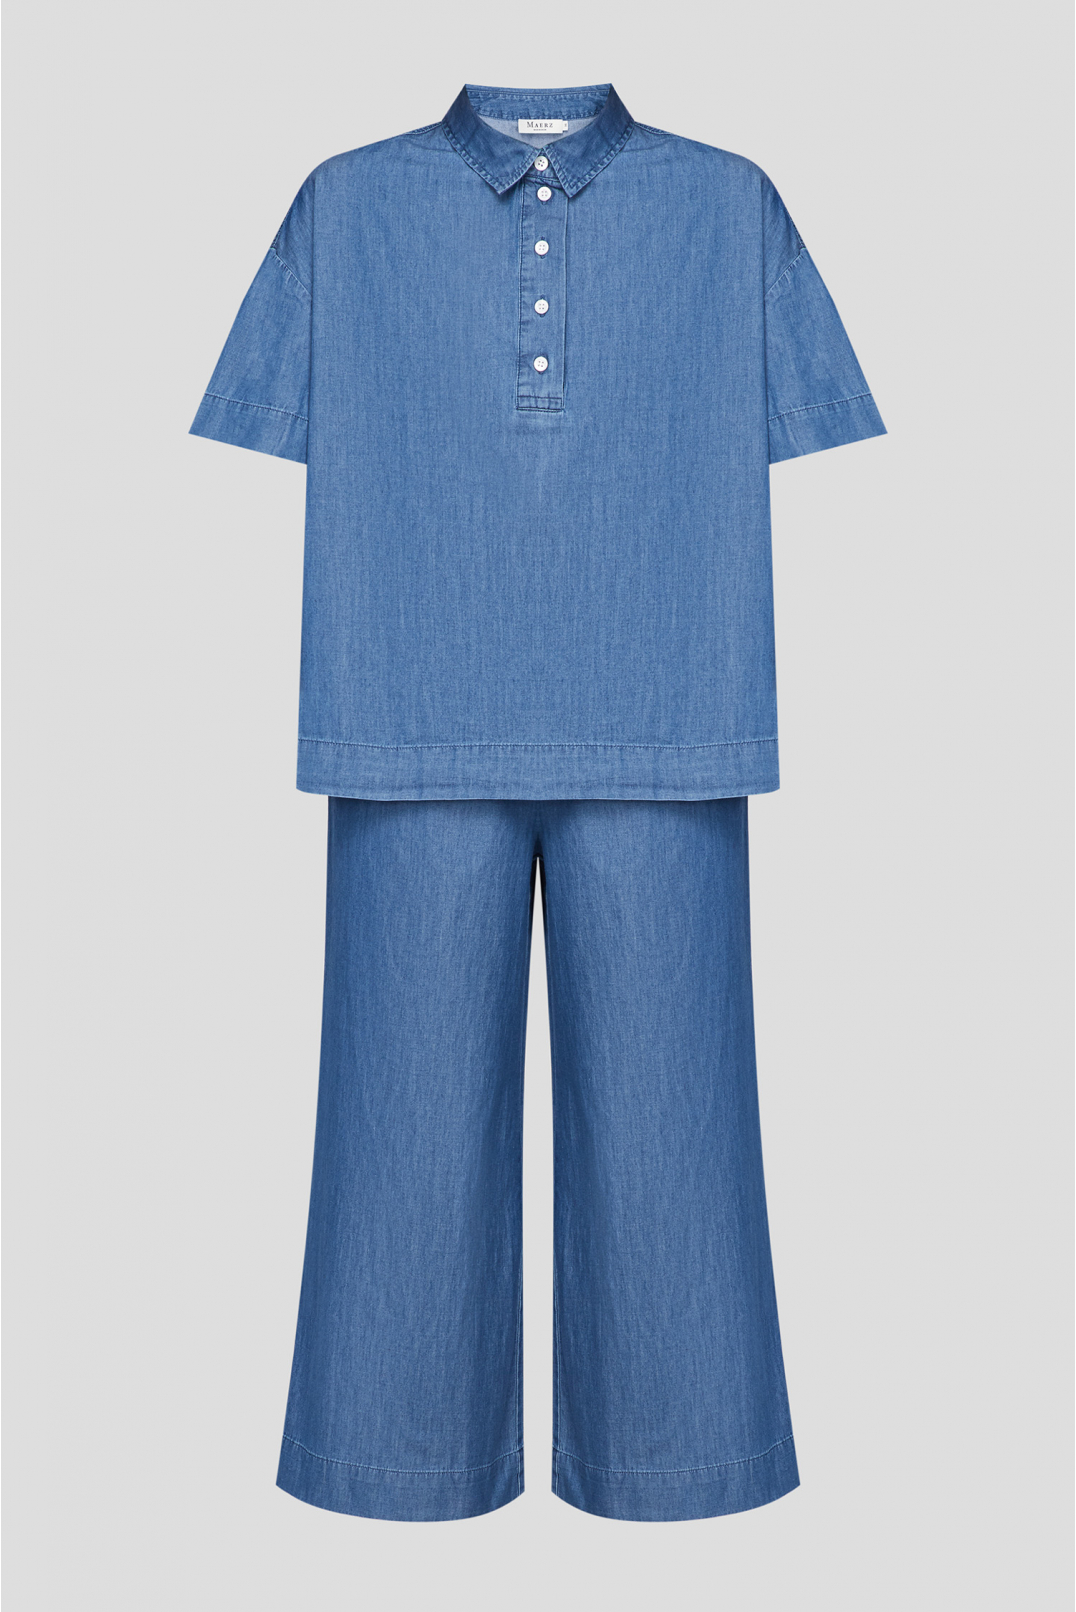 Жіночий синій джинсовий костюм (поло, кюлоти) - 1